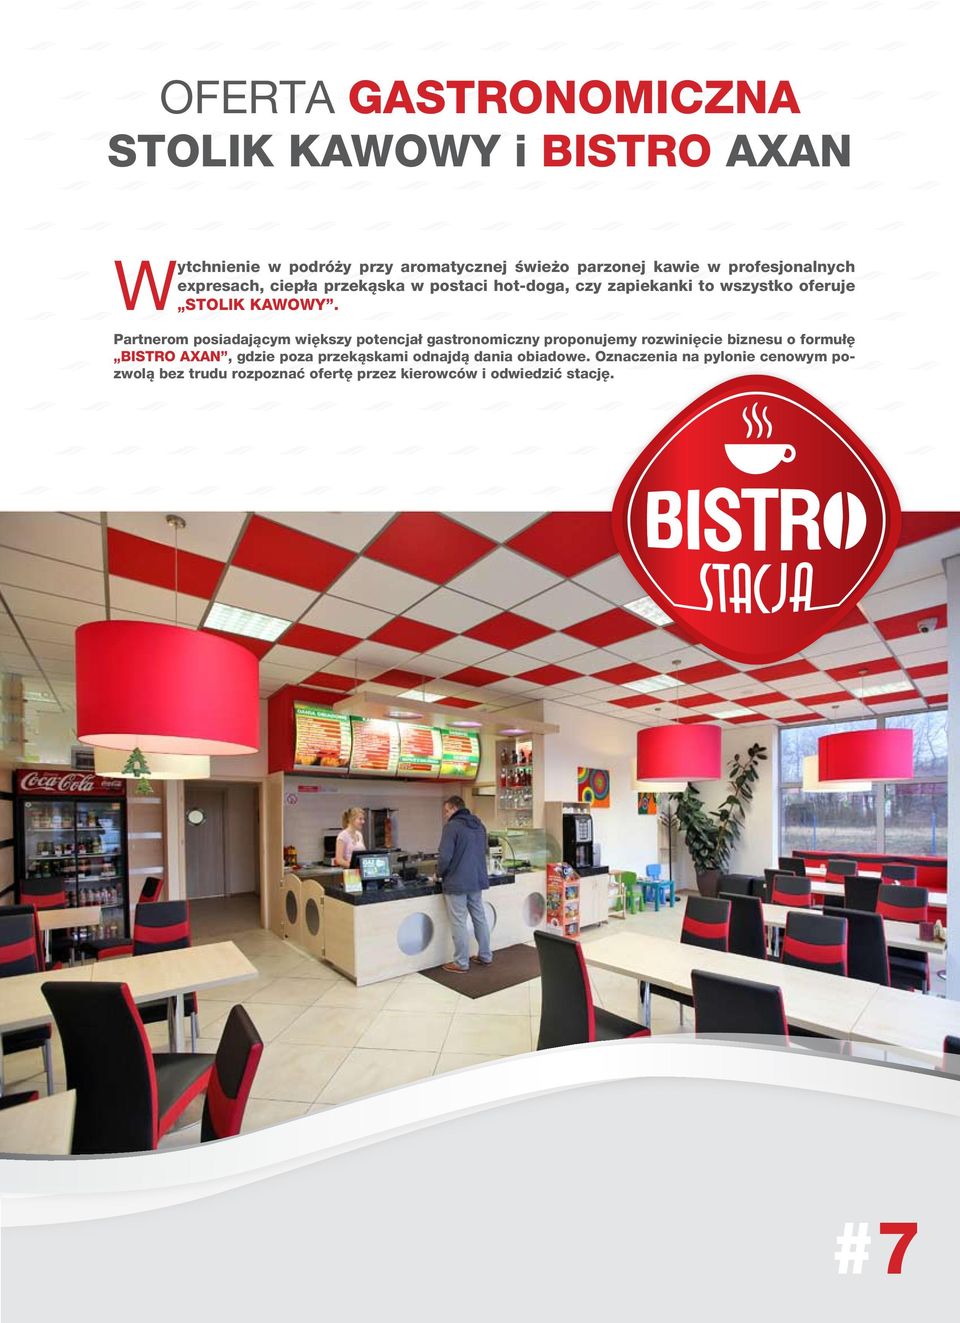 Partnerom posiadającym większy potencjał gastronomiczny proponujemy rozwinięcie biznesu o formułę BISTRO AXAN, gdzie poza